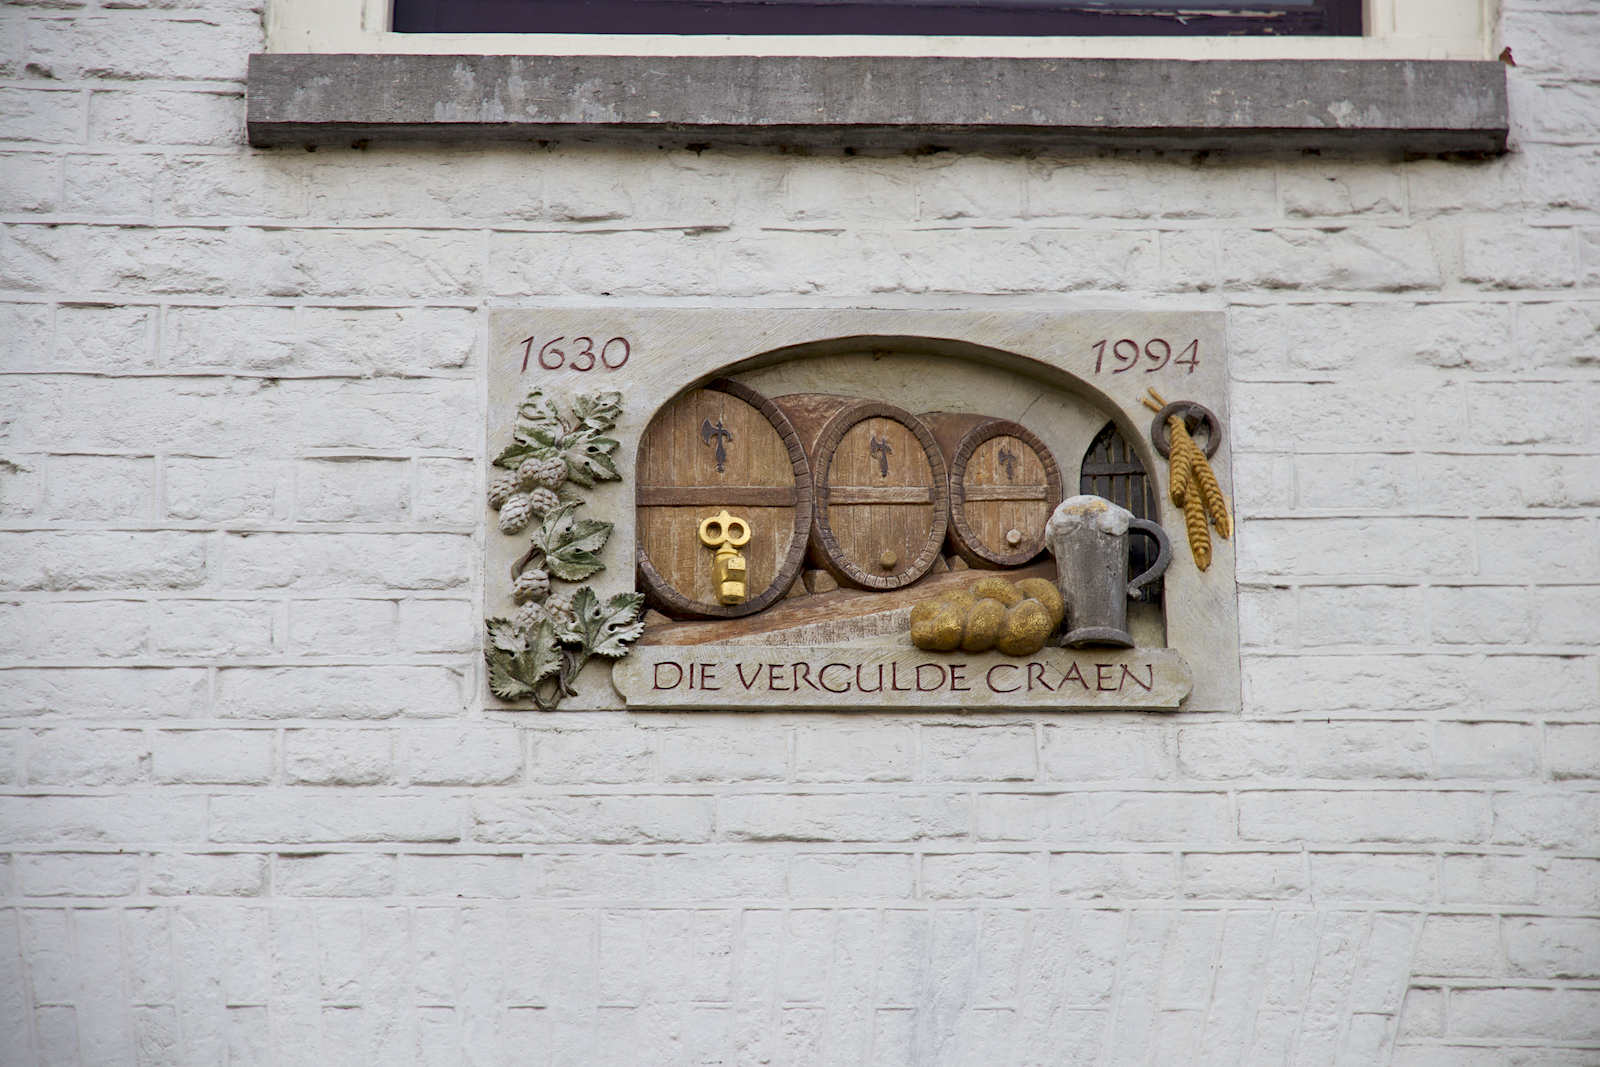 Voormalige woonhuis Trijn van Leemput waar ook Utrechtse brouwerij 'Die Vergulde Craen' gevestigd was.